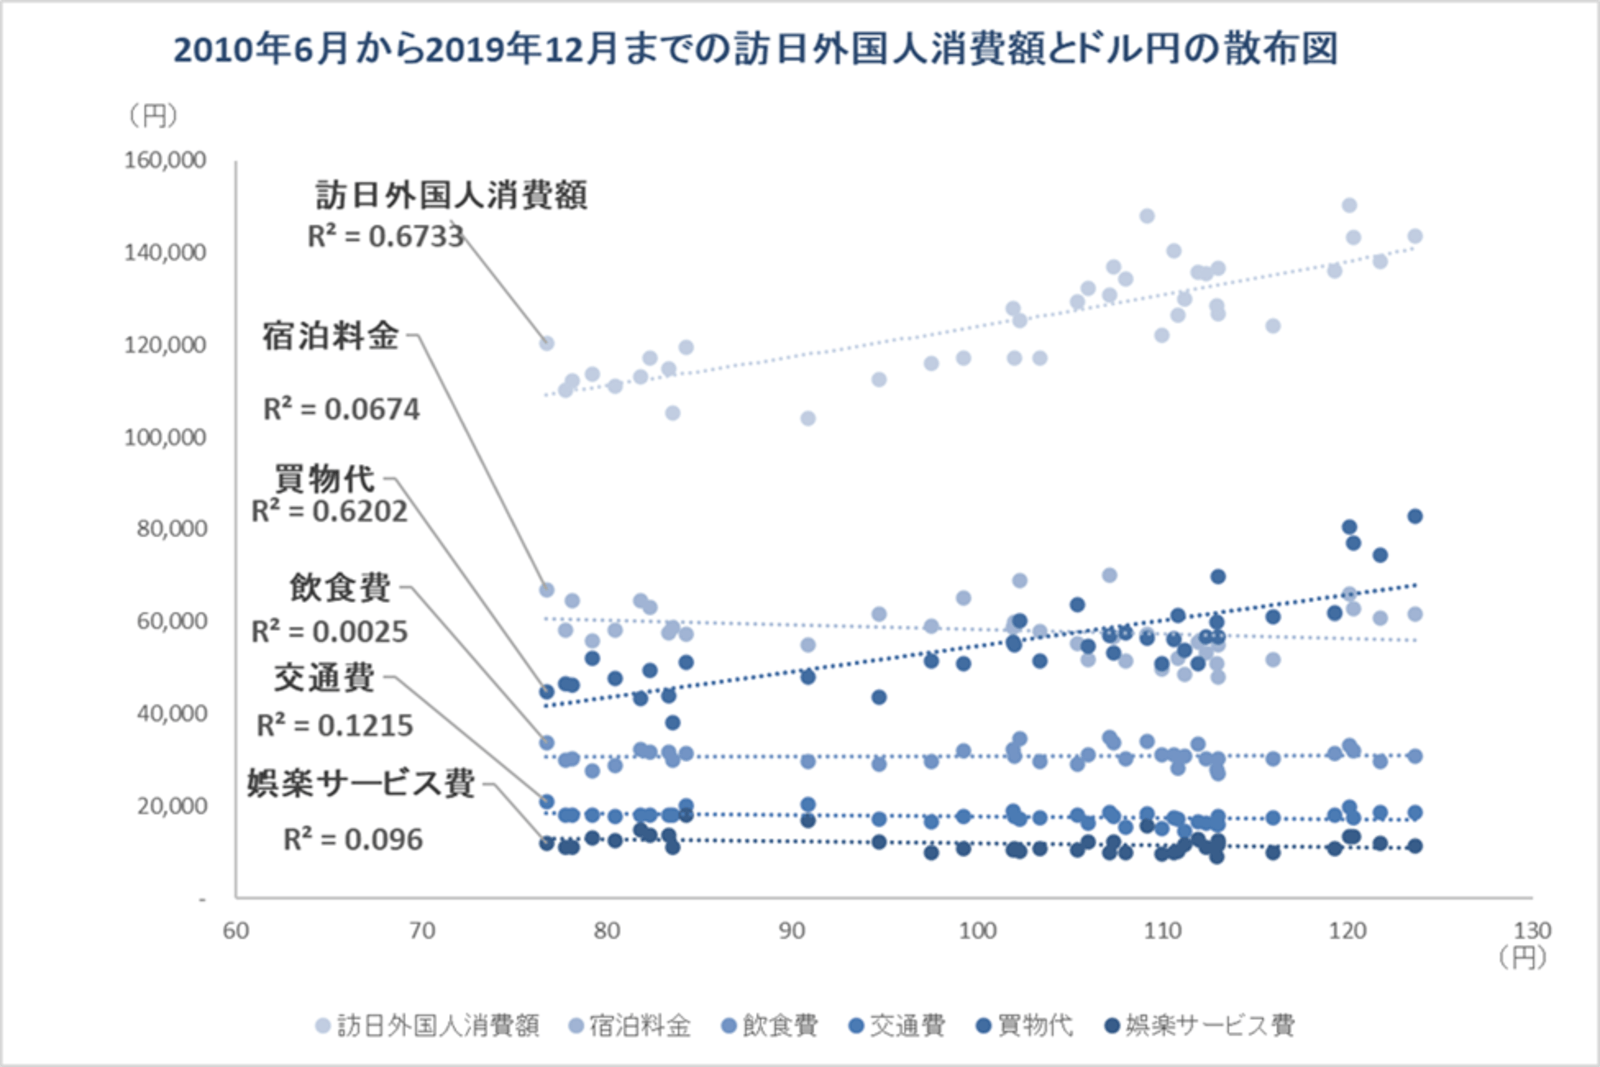 2010年6月から2019年12月までの訪日外国人消費額とドル円の散布図